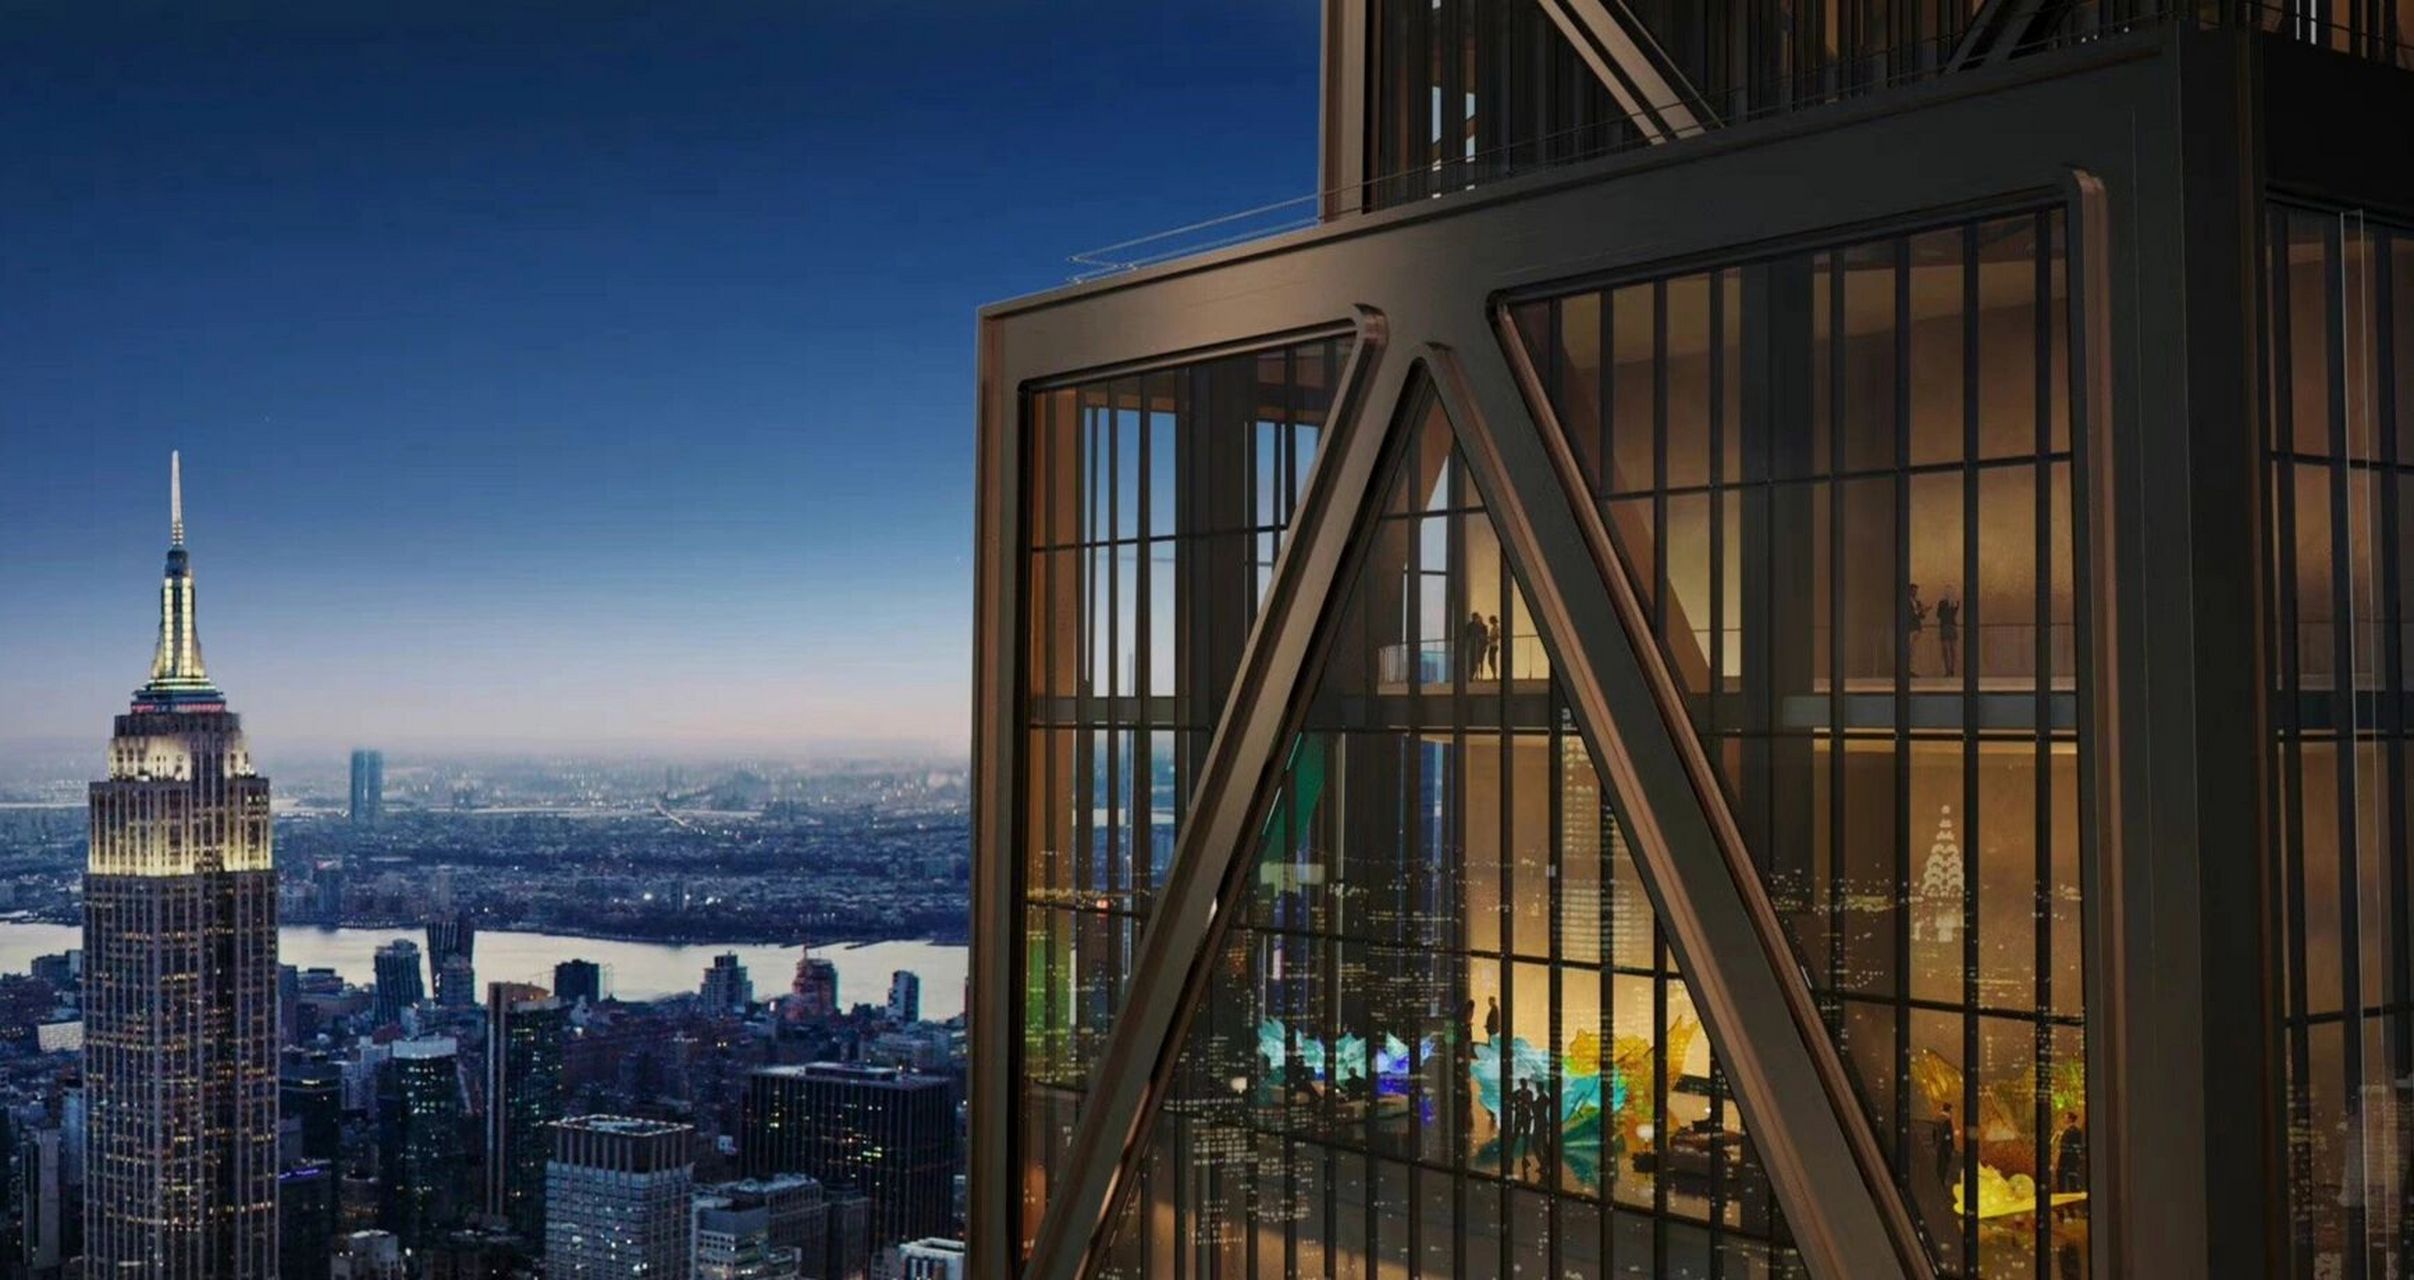 优秀建筑案例——纽约摩根大通全球总部 纽约摩根大通全球总部由